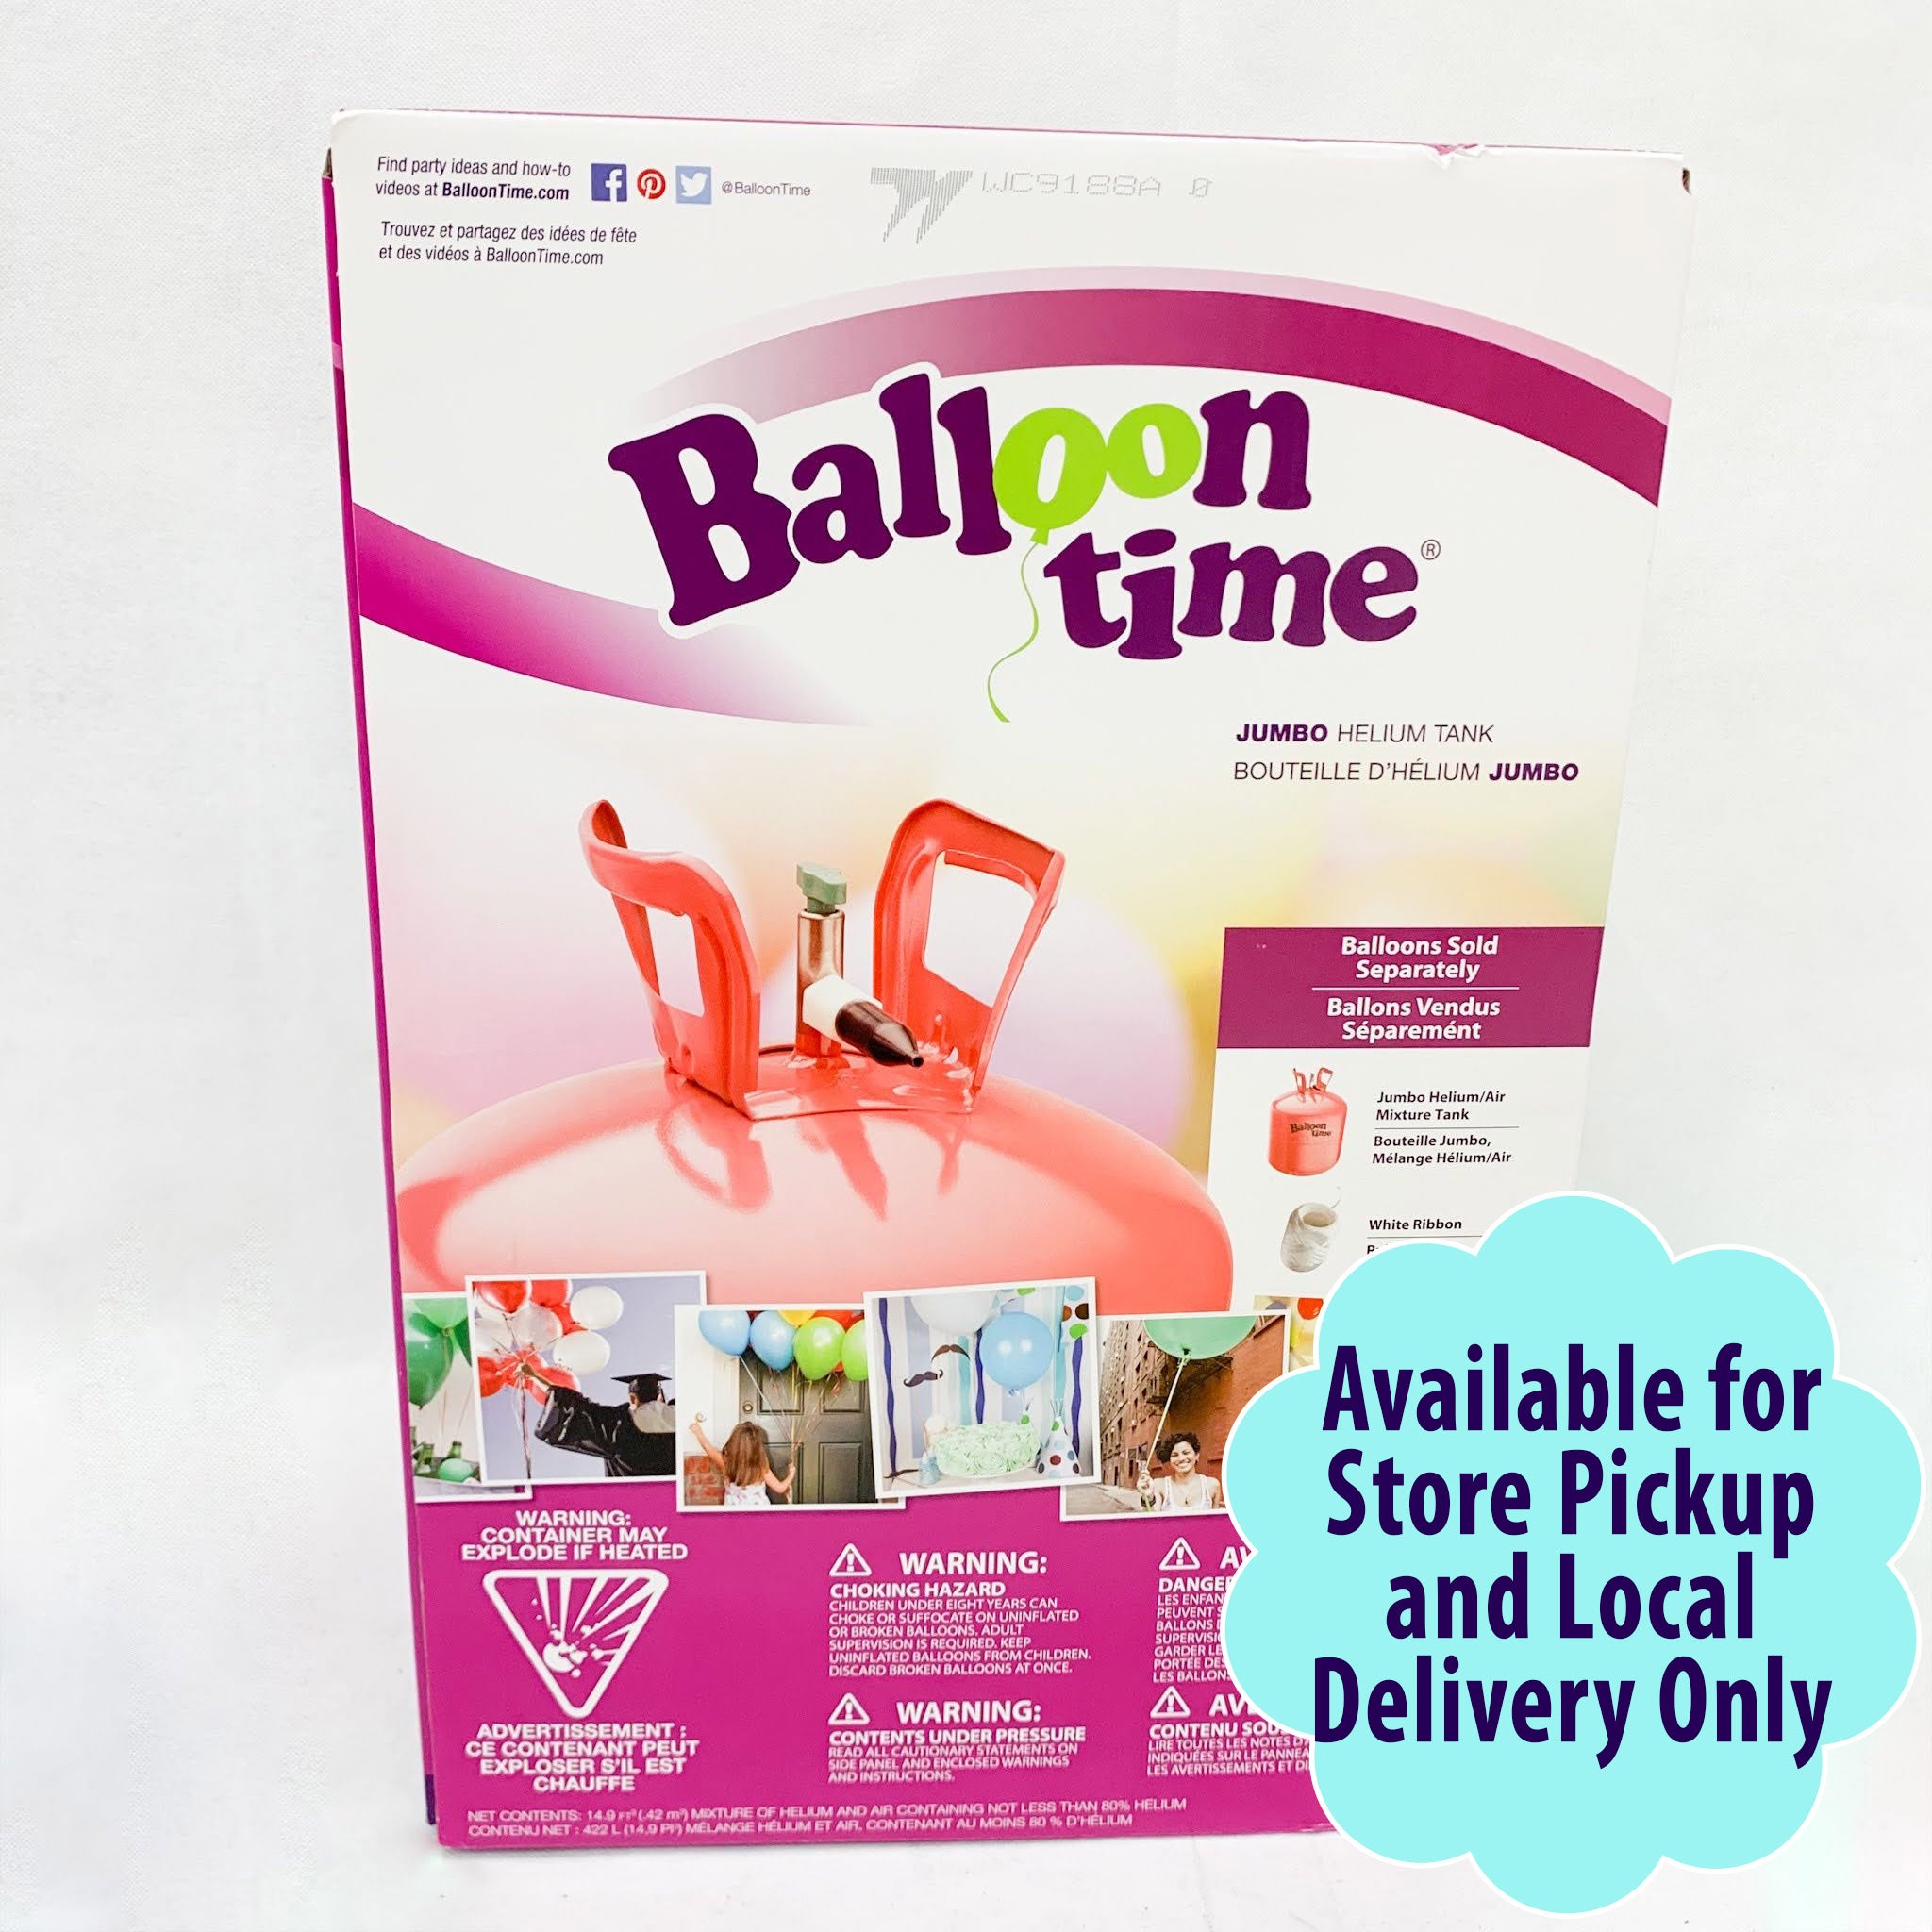 Réservoir d'hélium pour 20 ballons - Partywinkel